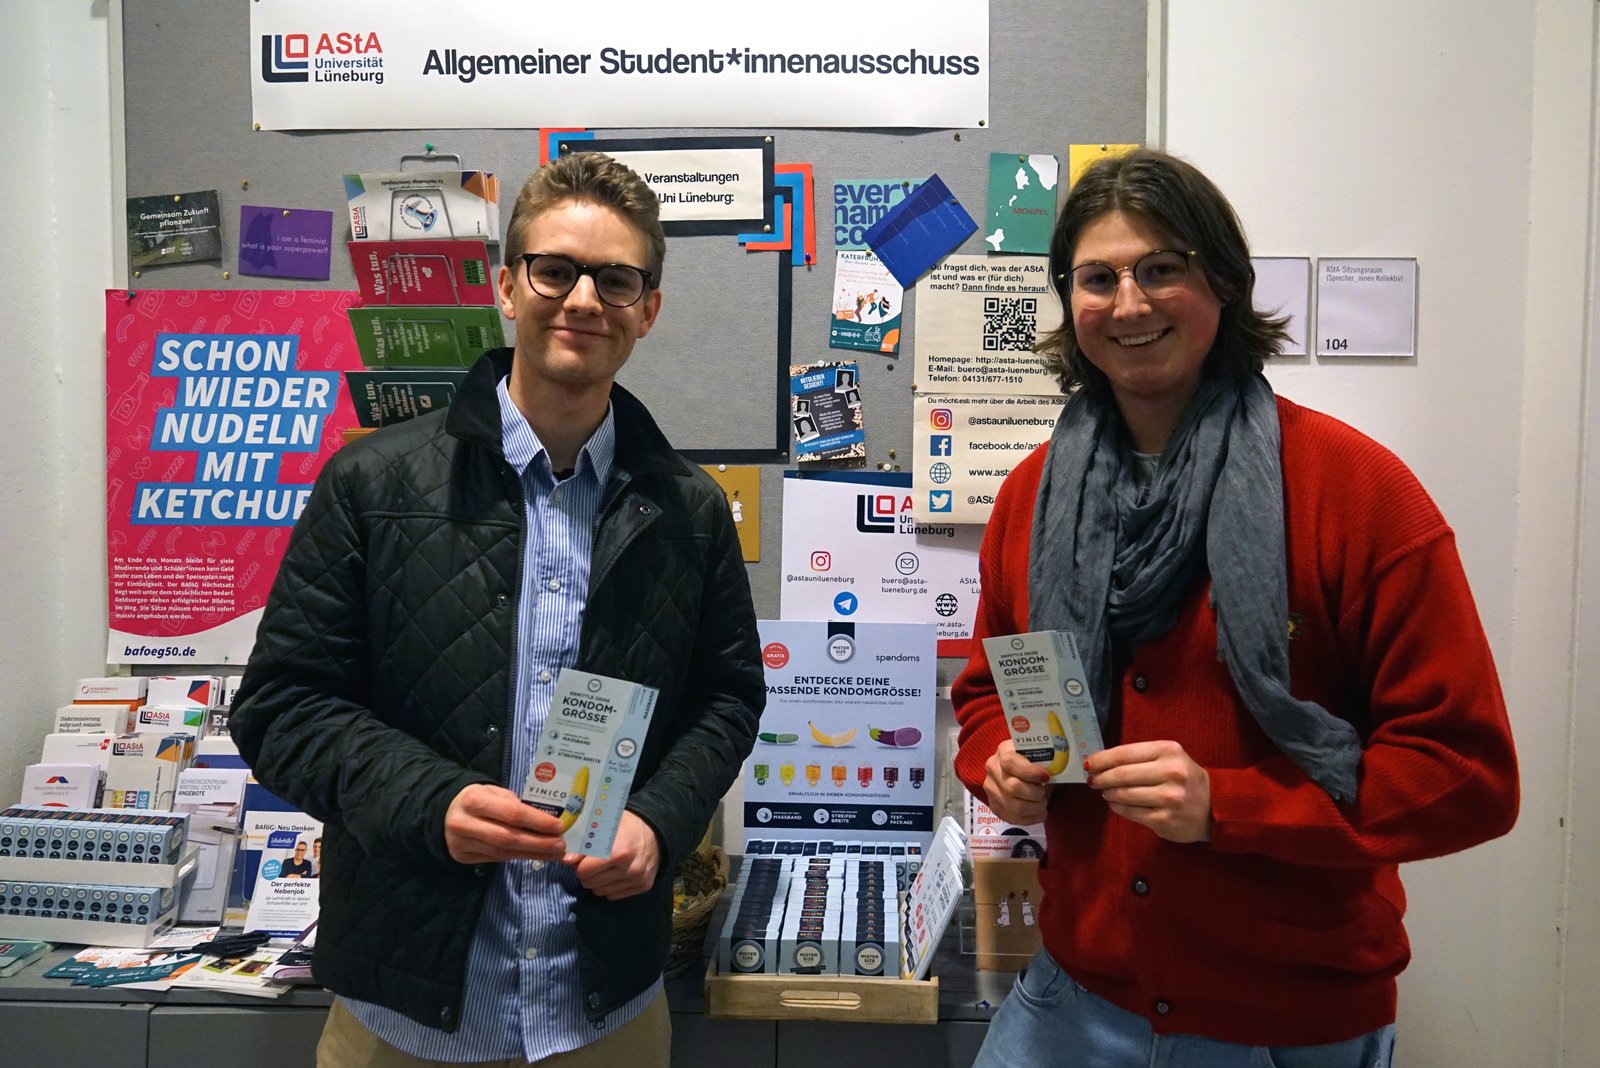 Luis fra Spondoms (til venstre) åpner den gratis kondomdispenseren sammen med Max fra AStA ved Leuphana University Lüneburg (til høyre).